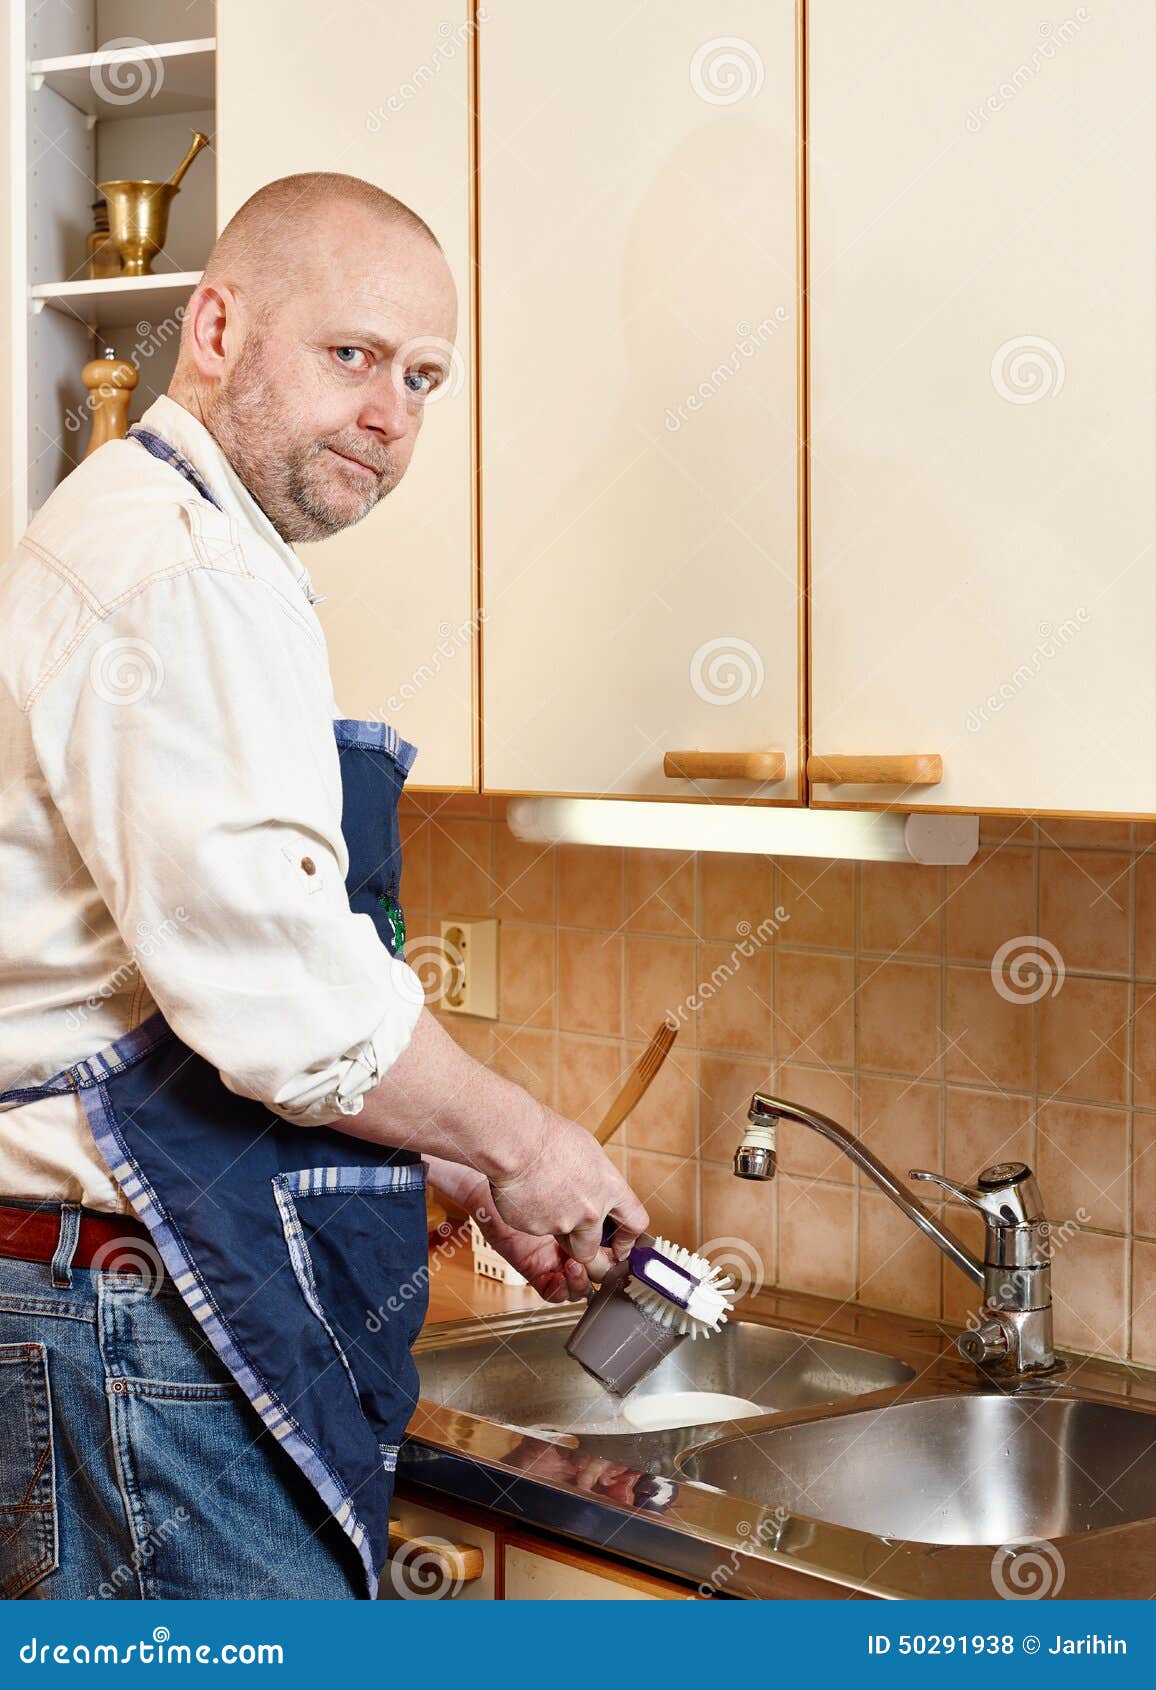 Парень моет посуду. Мужчина моющий посуду. Мужчина моет посуду. Человек моет посуду. Муж моет посуду.